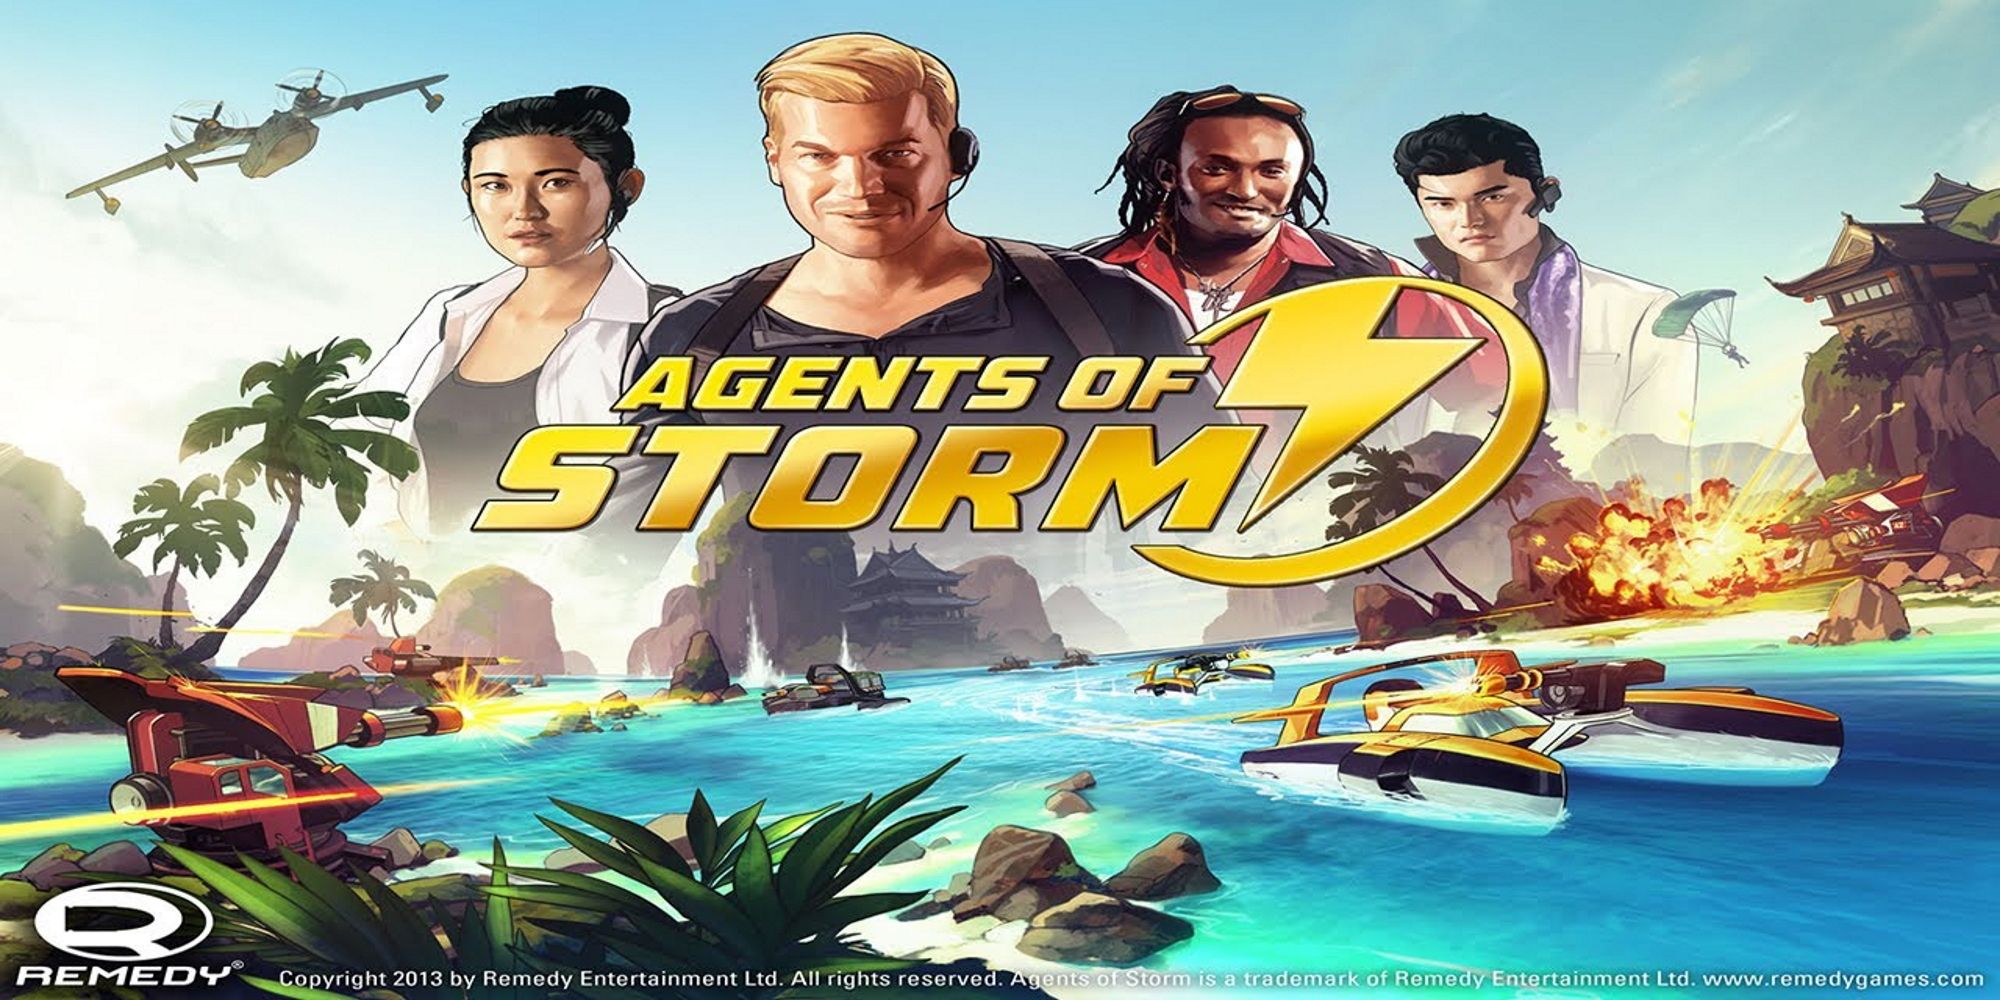 Každá hra od spoločnosti Remedy Entertainment, zaradená do kategórie Agents Of Storm